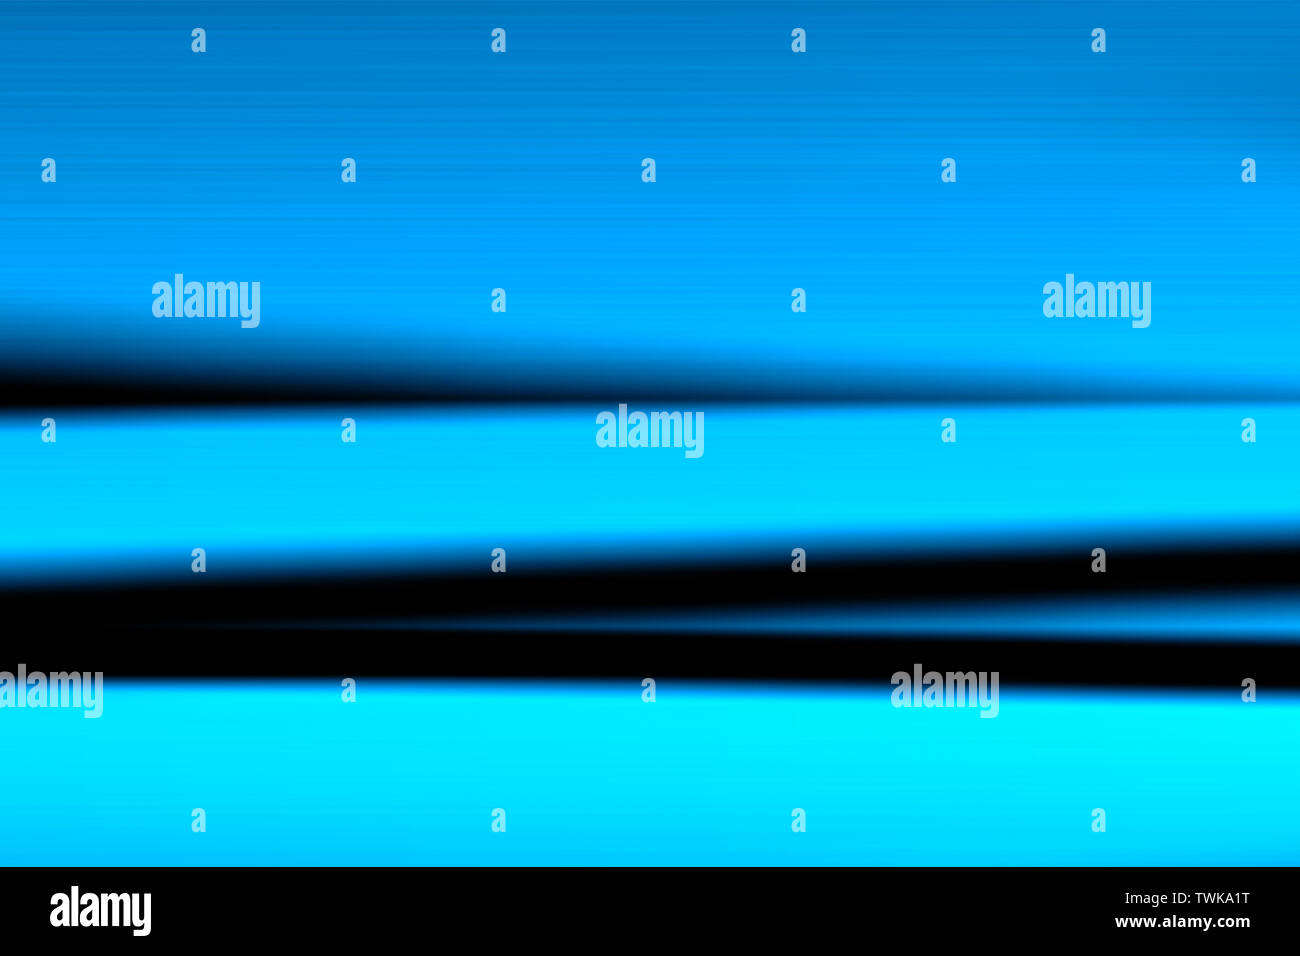 Farbenfrohe abstrakte Helle verschwommenen Hintergrund. Linien und Kurven, die Textur in schwarz, blau und türkis Tönen. Gestreifte Muster. Stockfoto